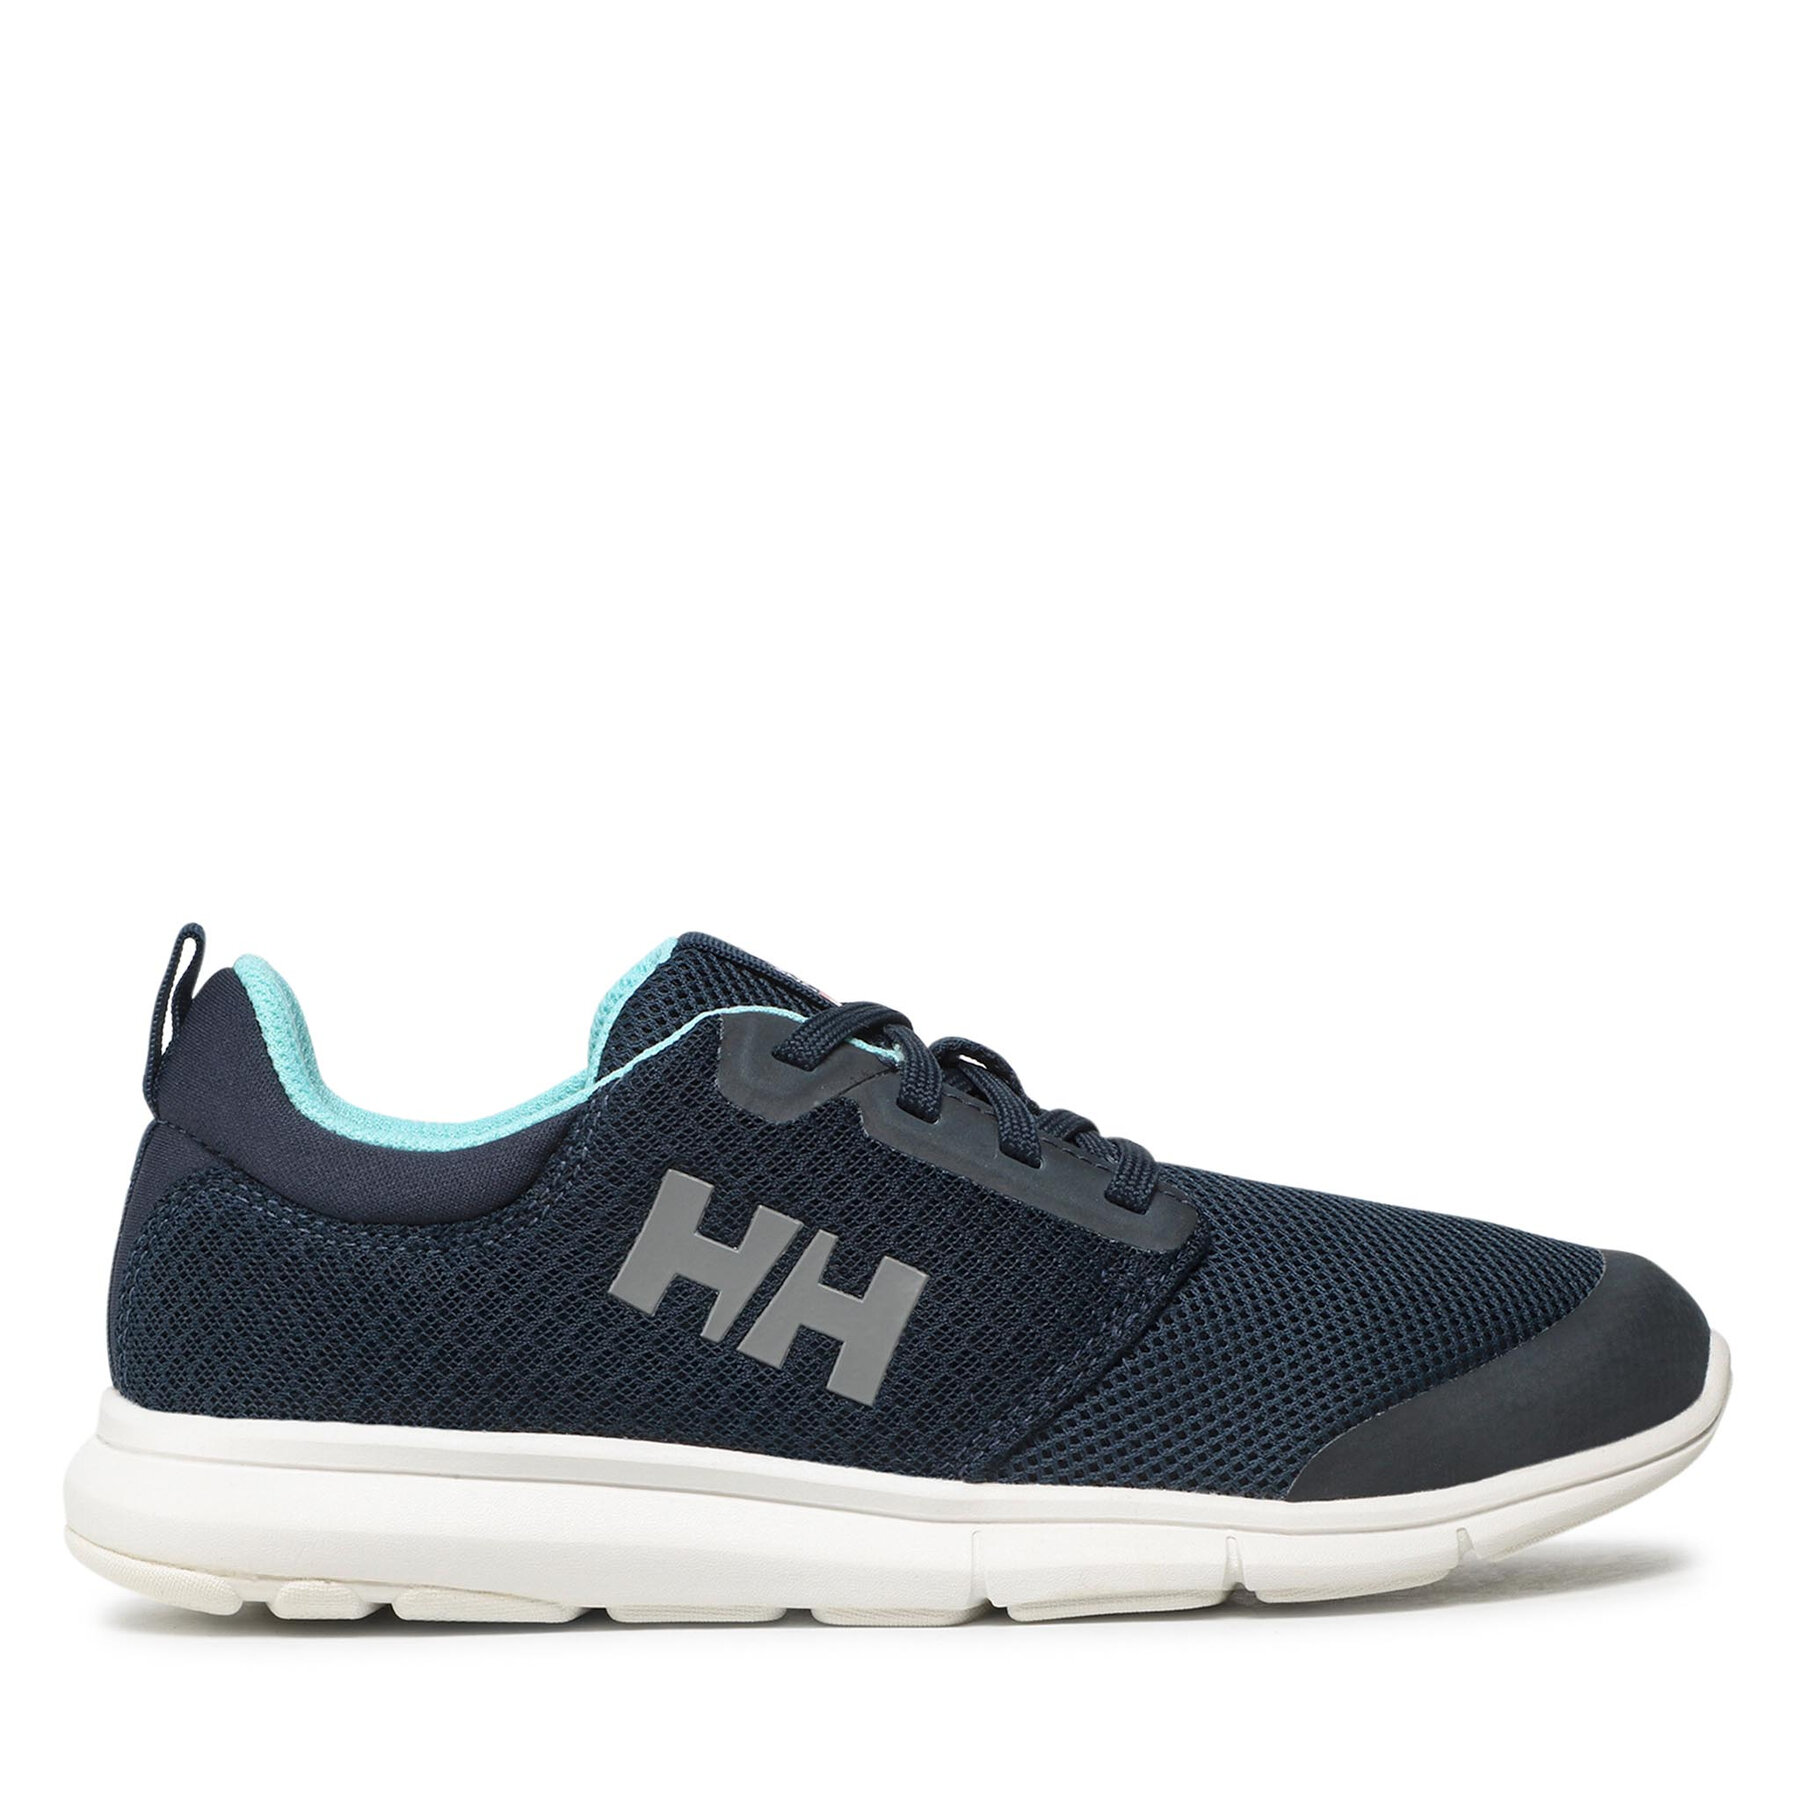 Schuhe Helly Hansen Feathering 11573_597 Navy/Glacier Blue/Off White von Helly Hansen